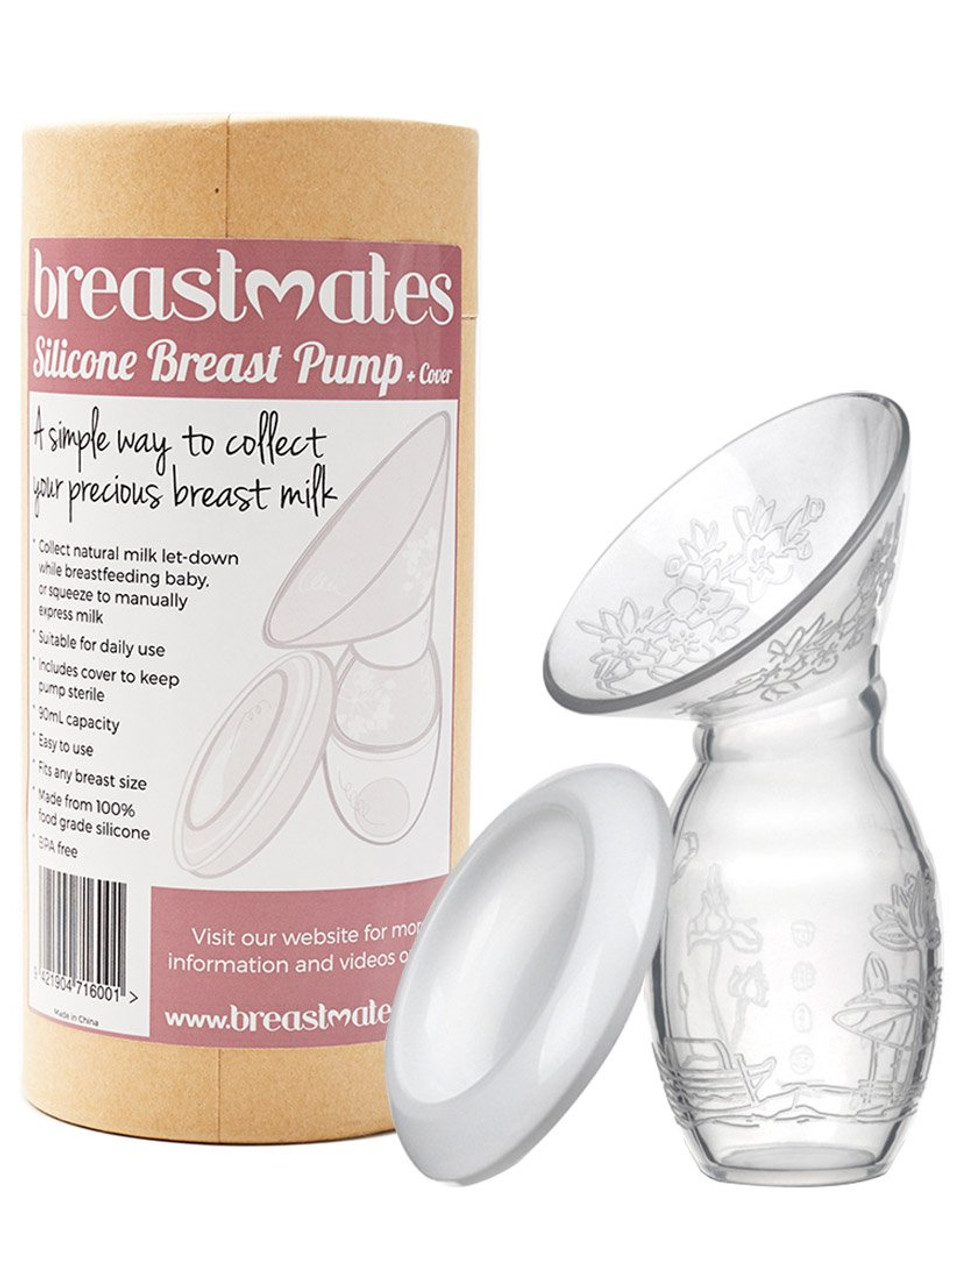 Avent Comfort Natural Manual Breast Pump - Shop online at Breastmates NZ